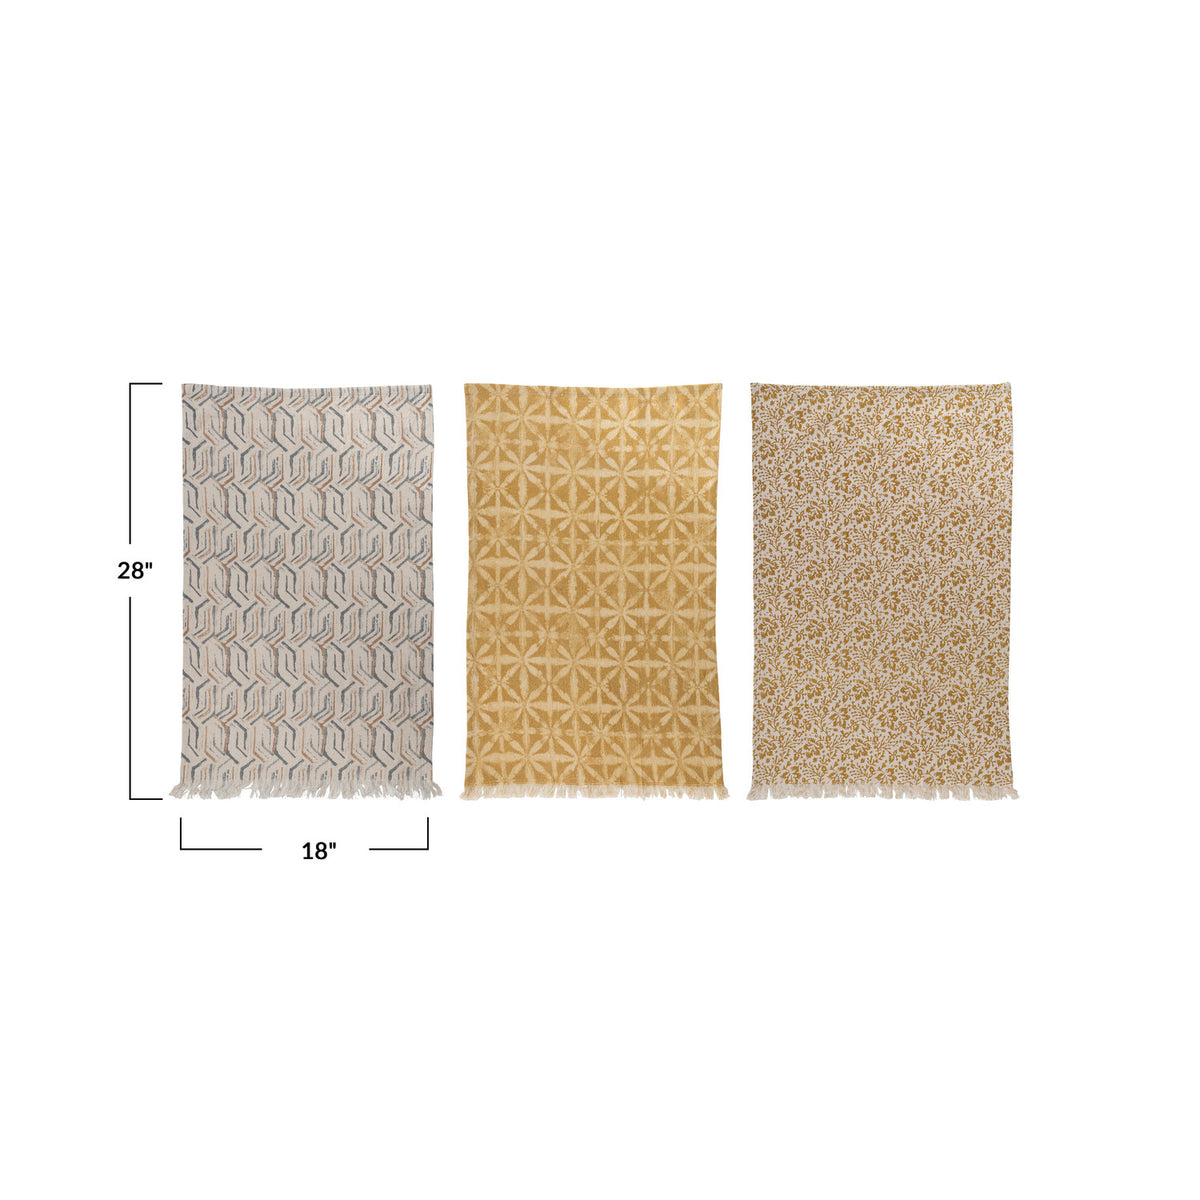 Cotton Printed Kitchen Towel w/Pattern